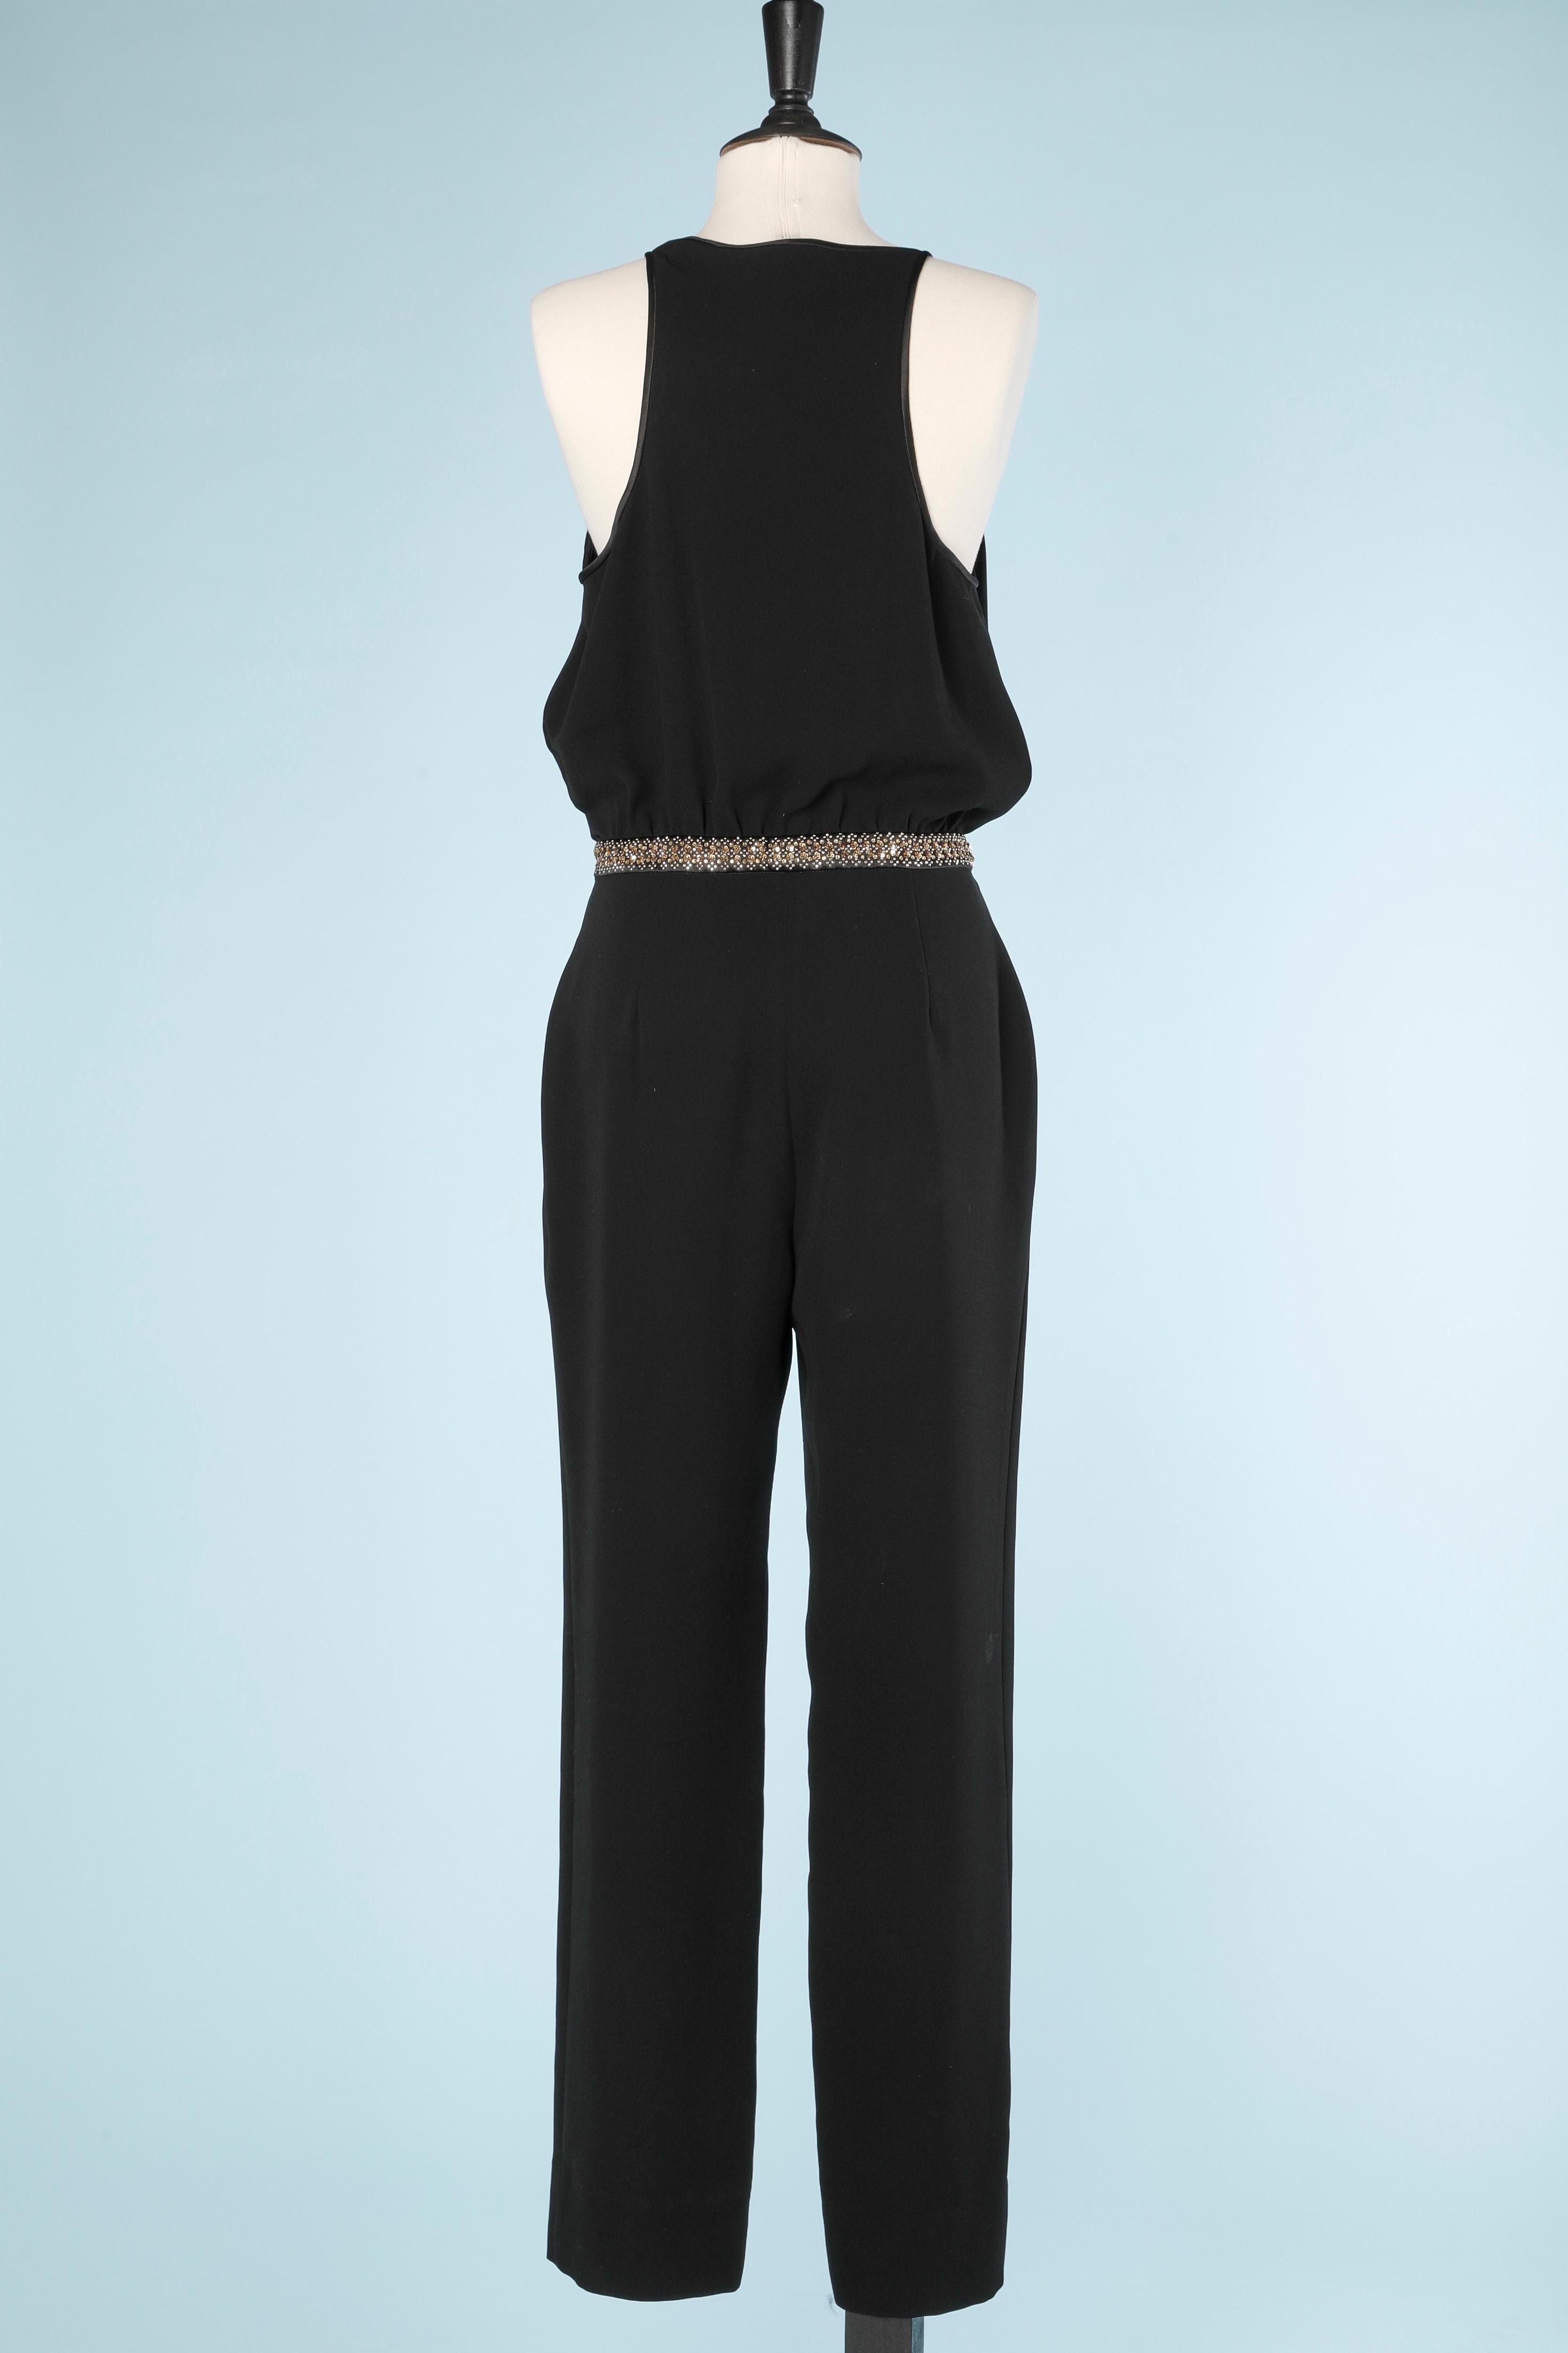 Diane Von Furstenberg black jumpsuit with Rhinestones  1